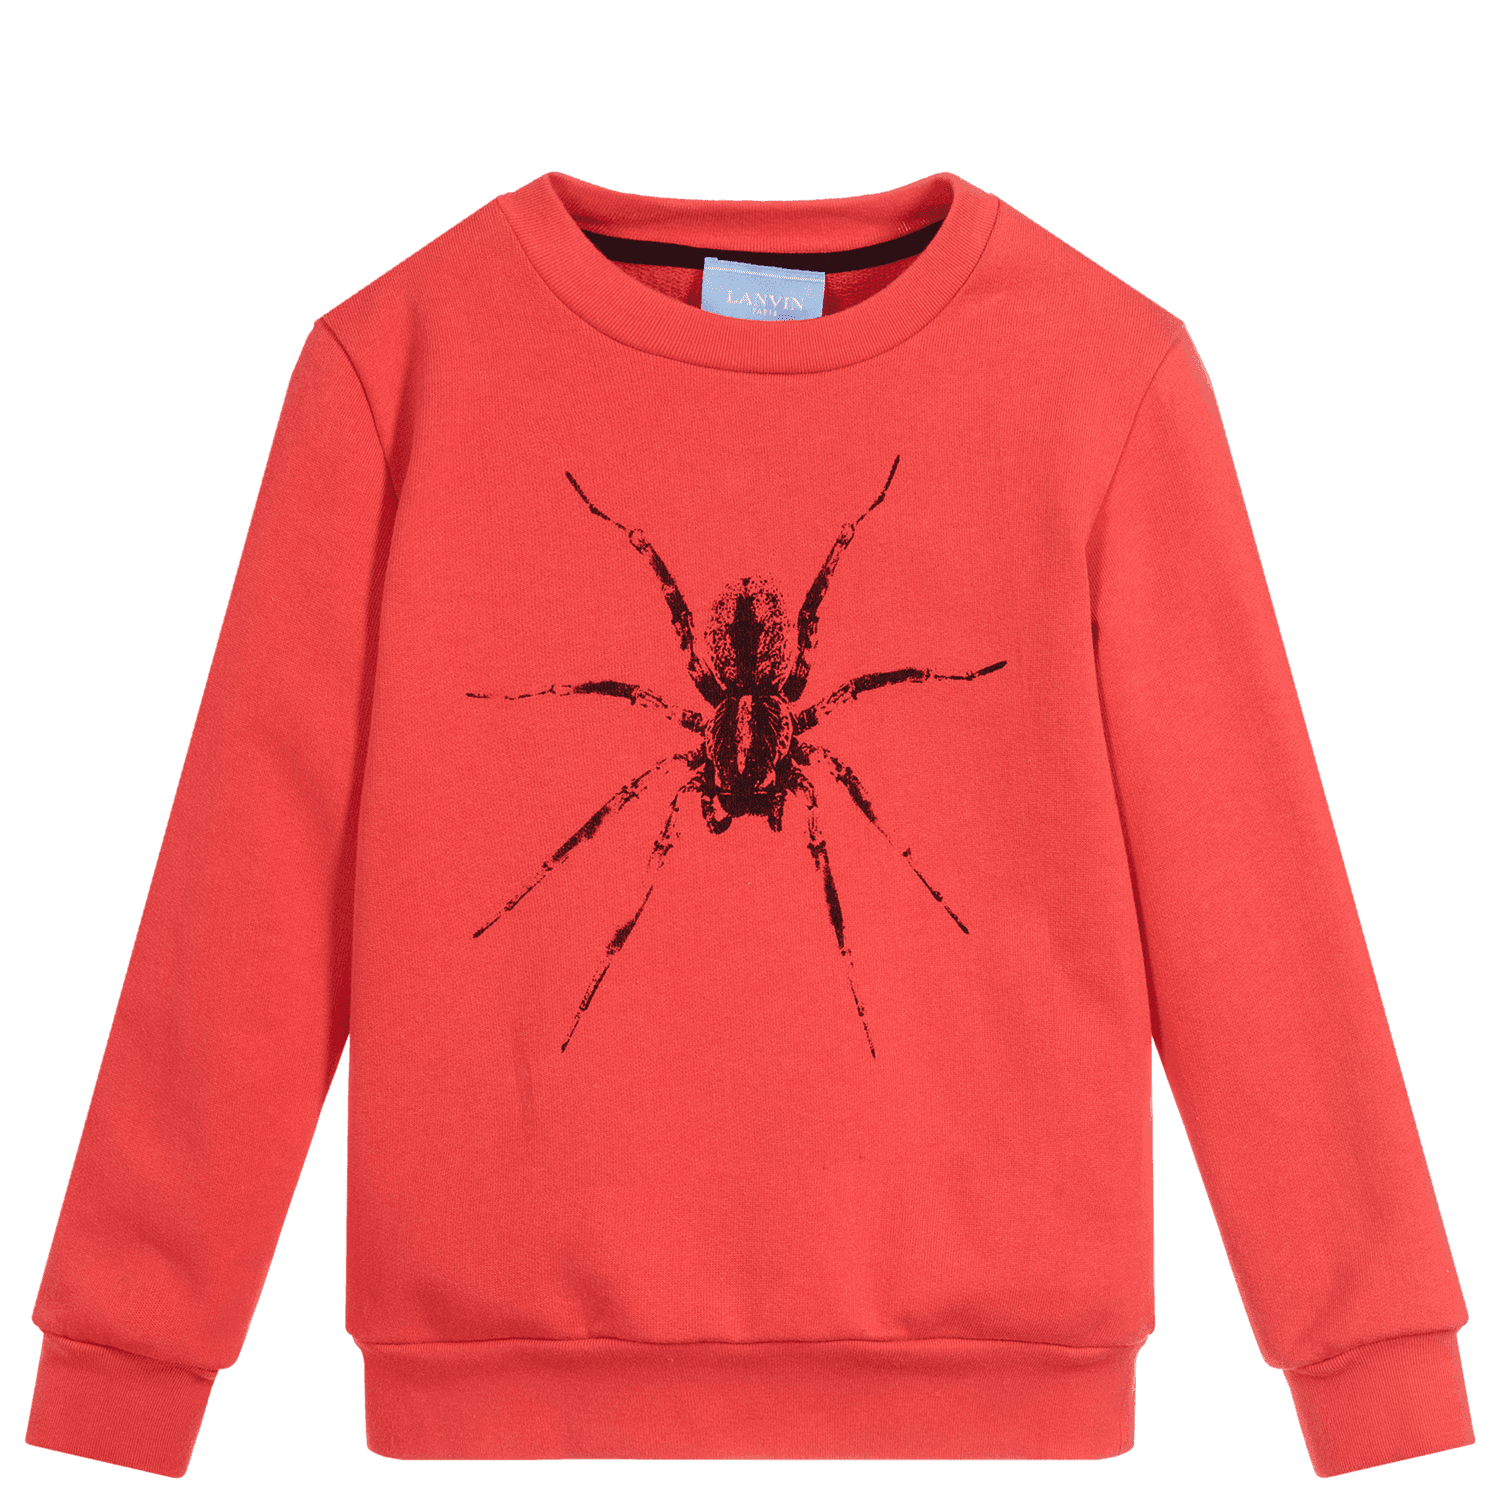 Lanvin Paris Boys Spider Sweatshirt Red 8Y